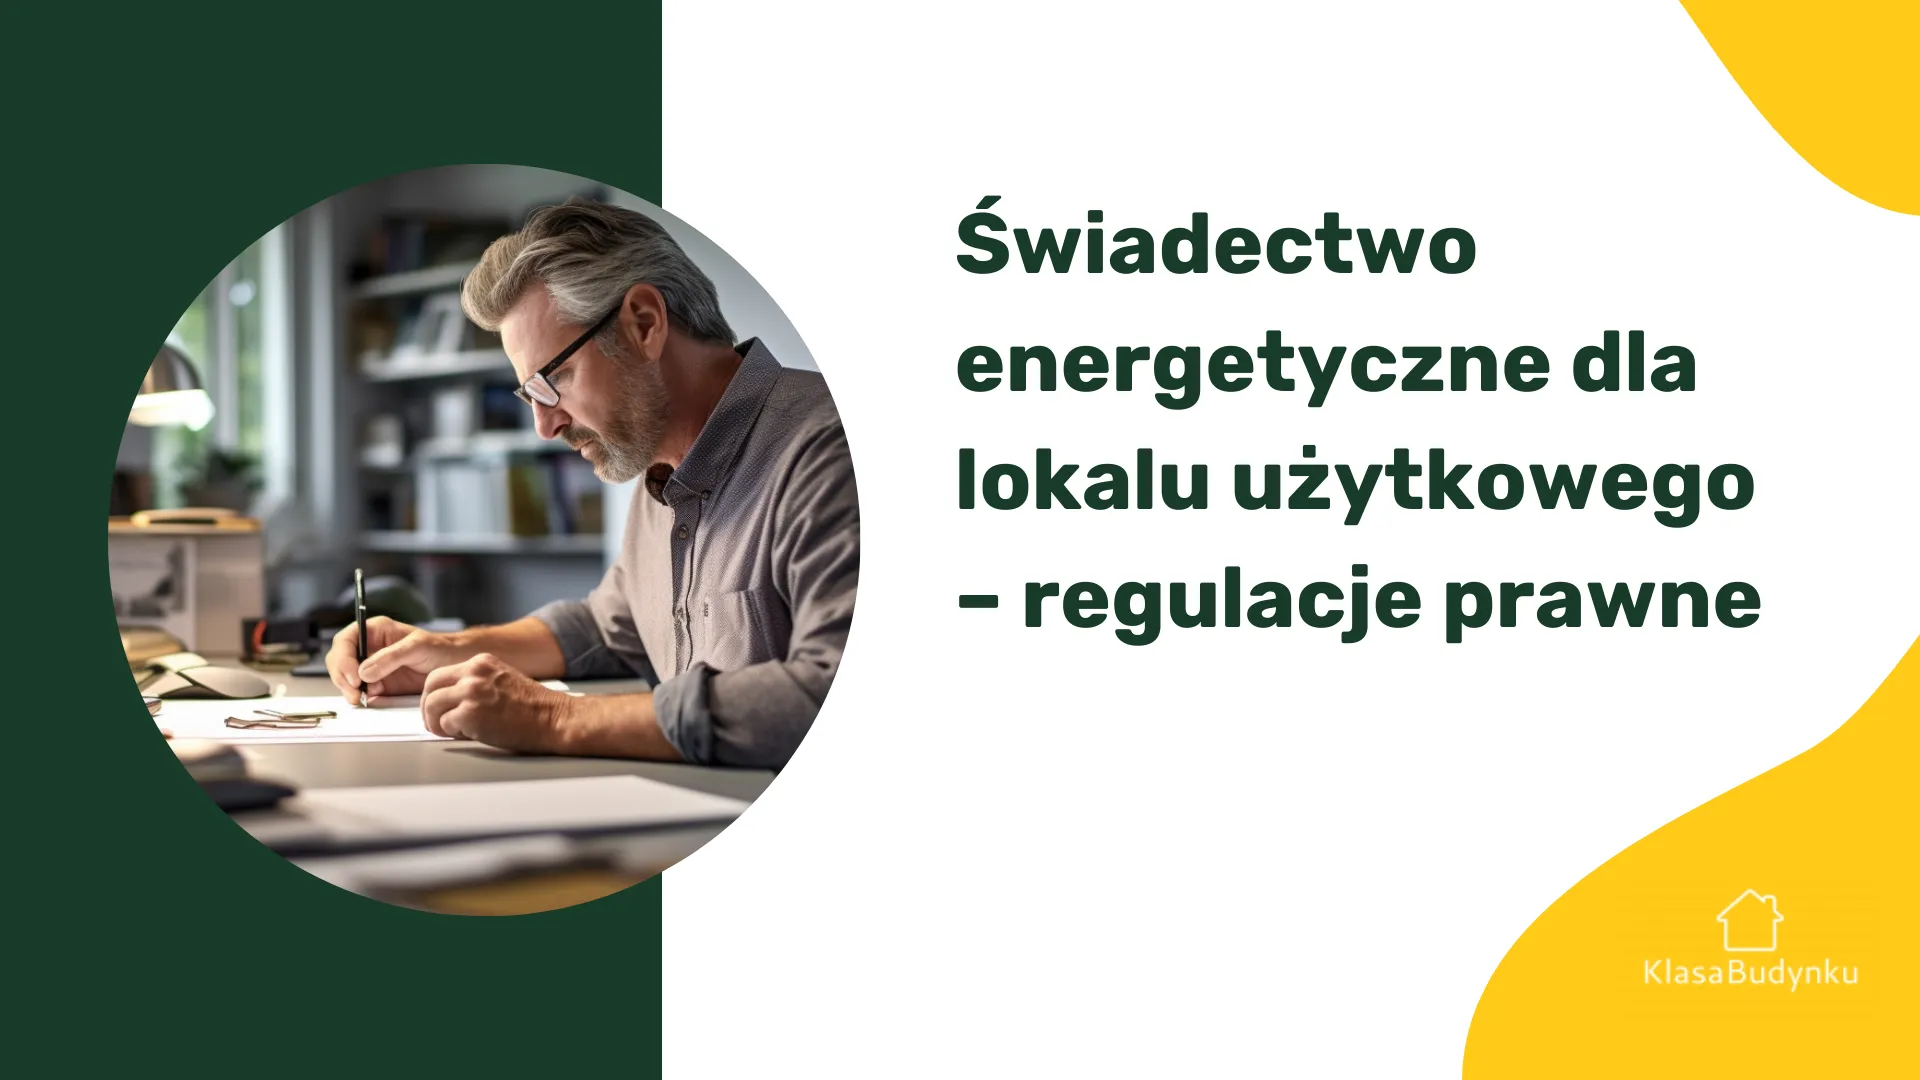 Świadectwo energetyczne dla lokalu użytkowego – regulacje prawne.